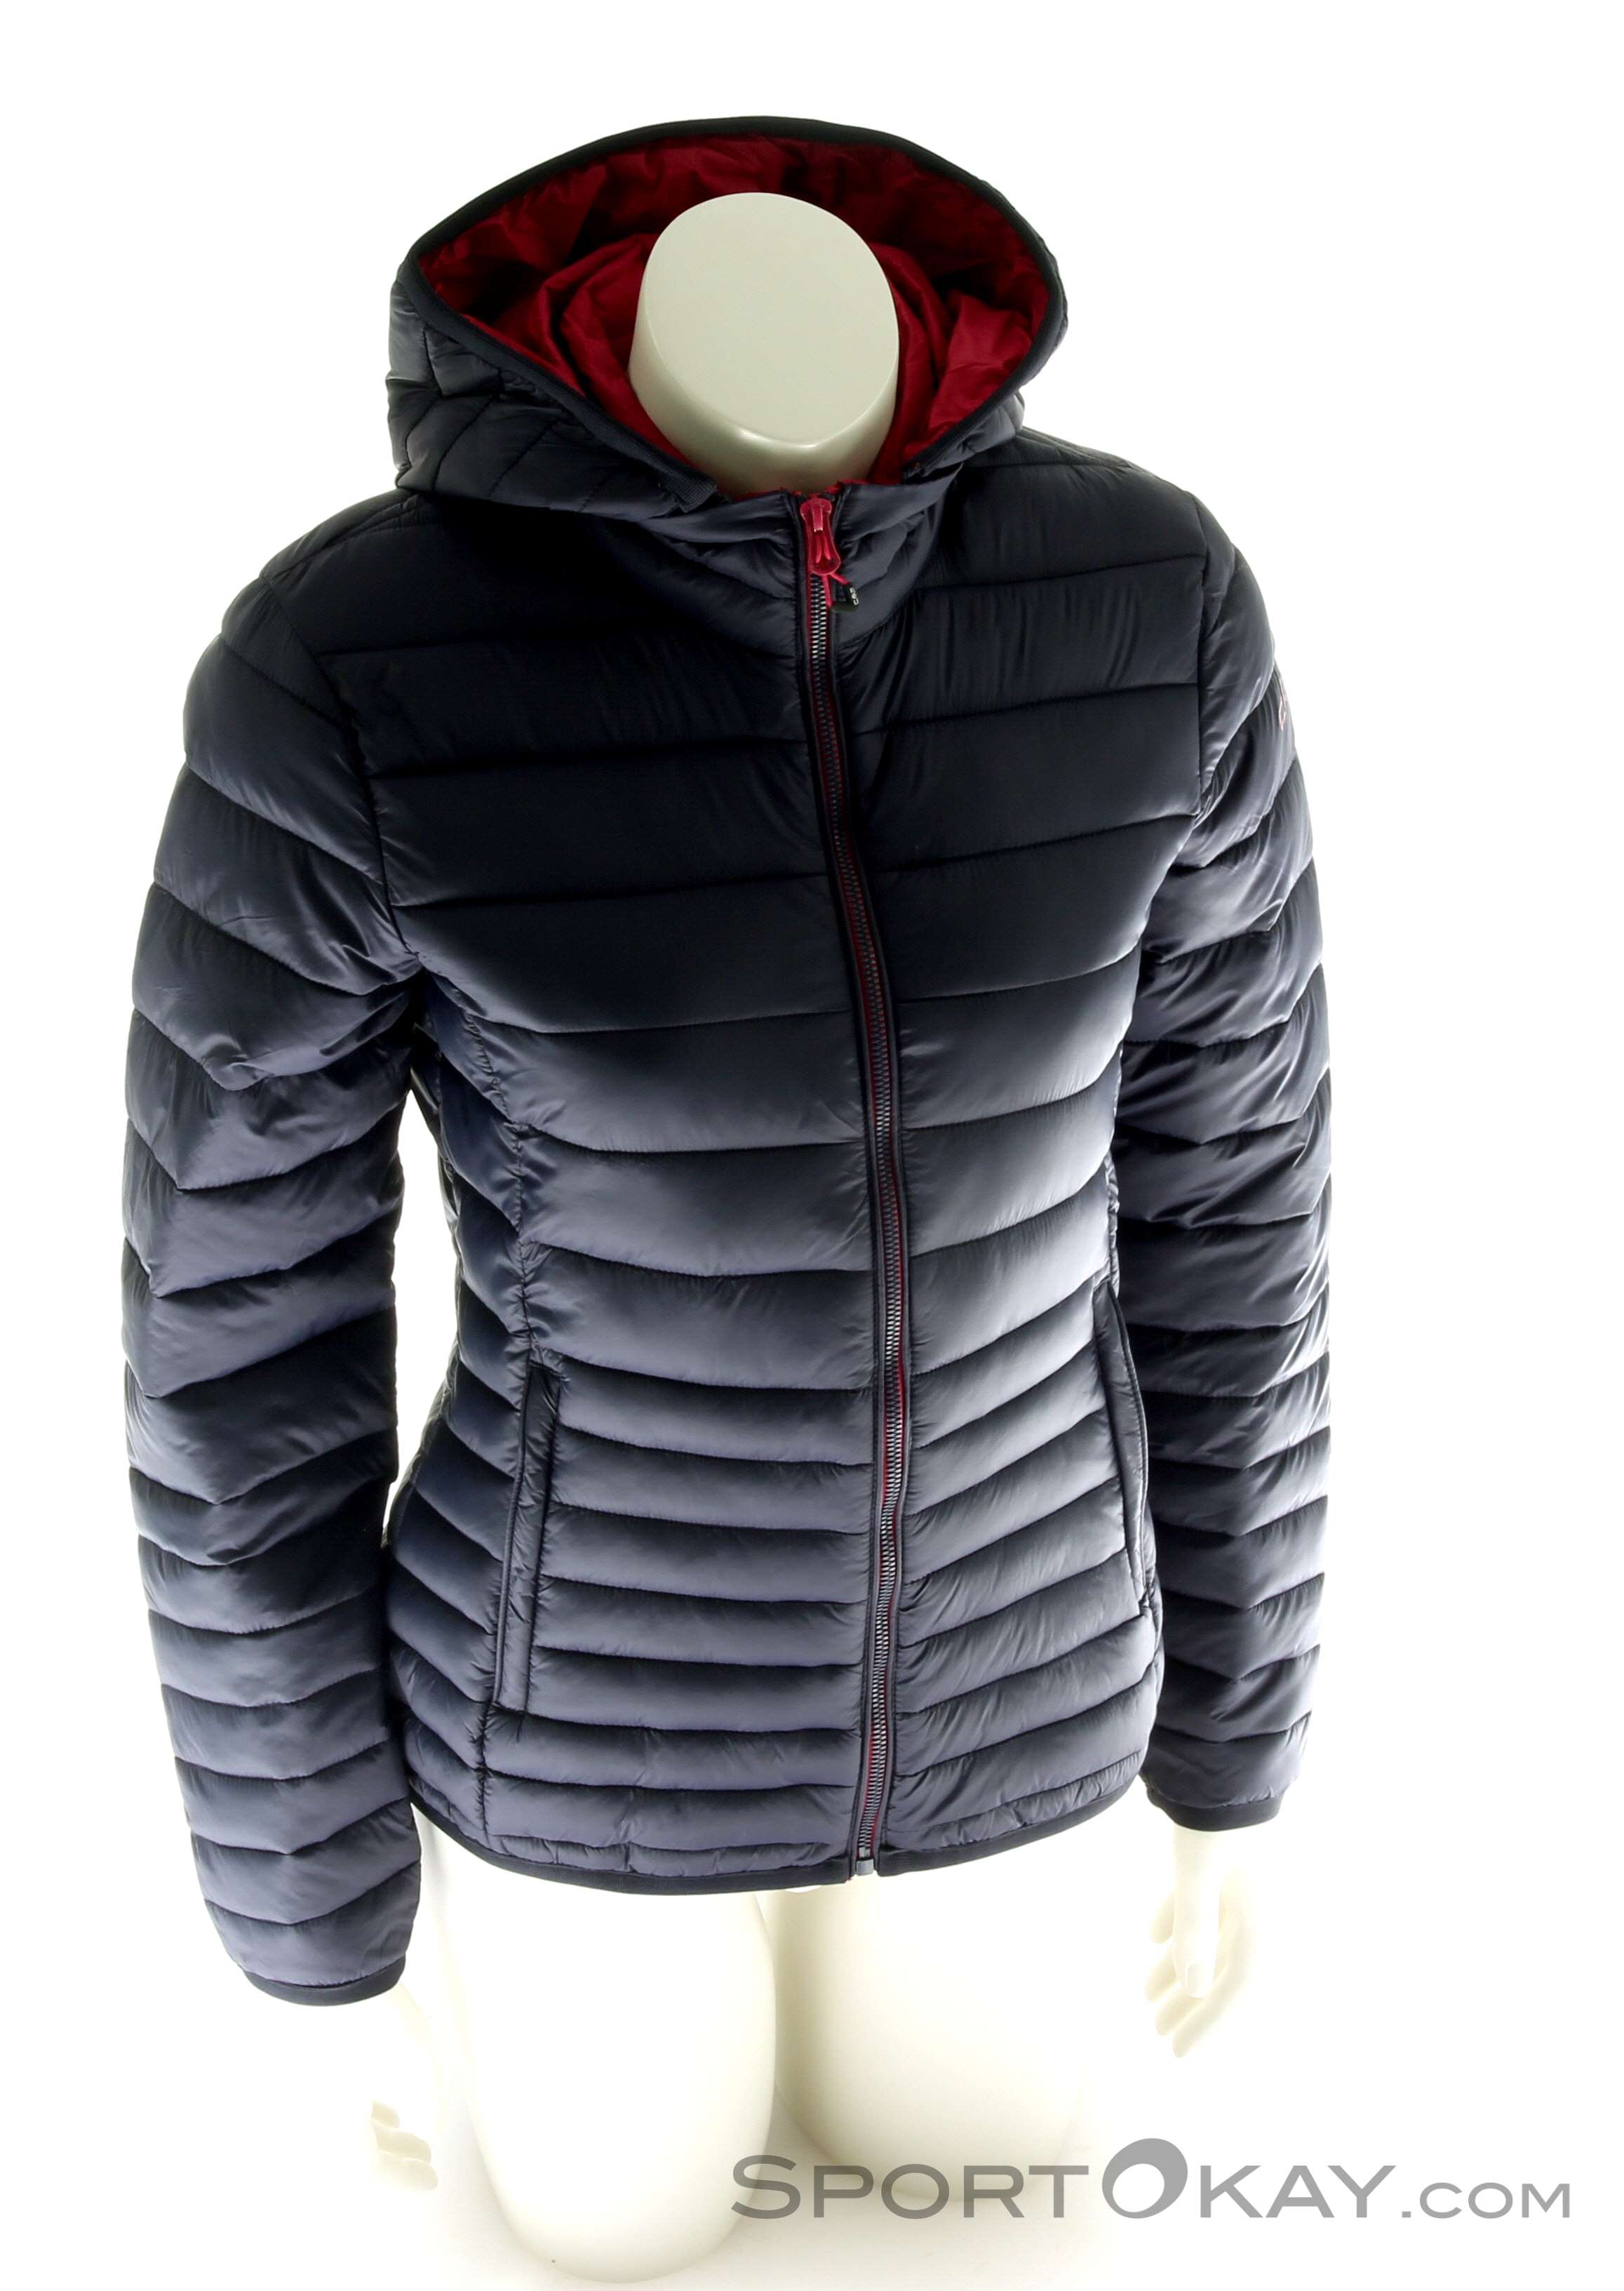 Jacket - Womens Clothing Outdoor Outdoor - - Jackets CMP Zip All - Jacket Outdoor Hood